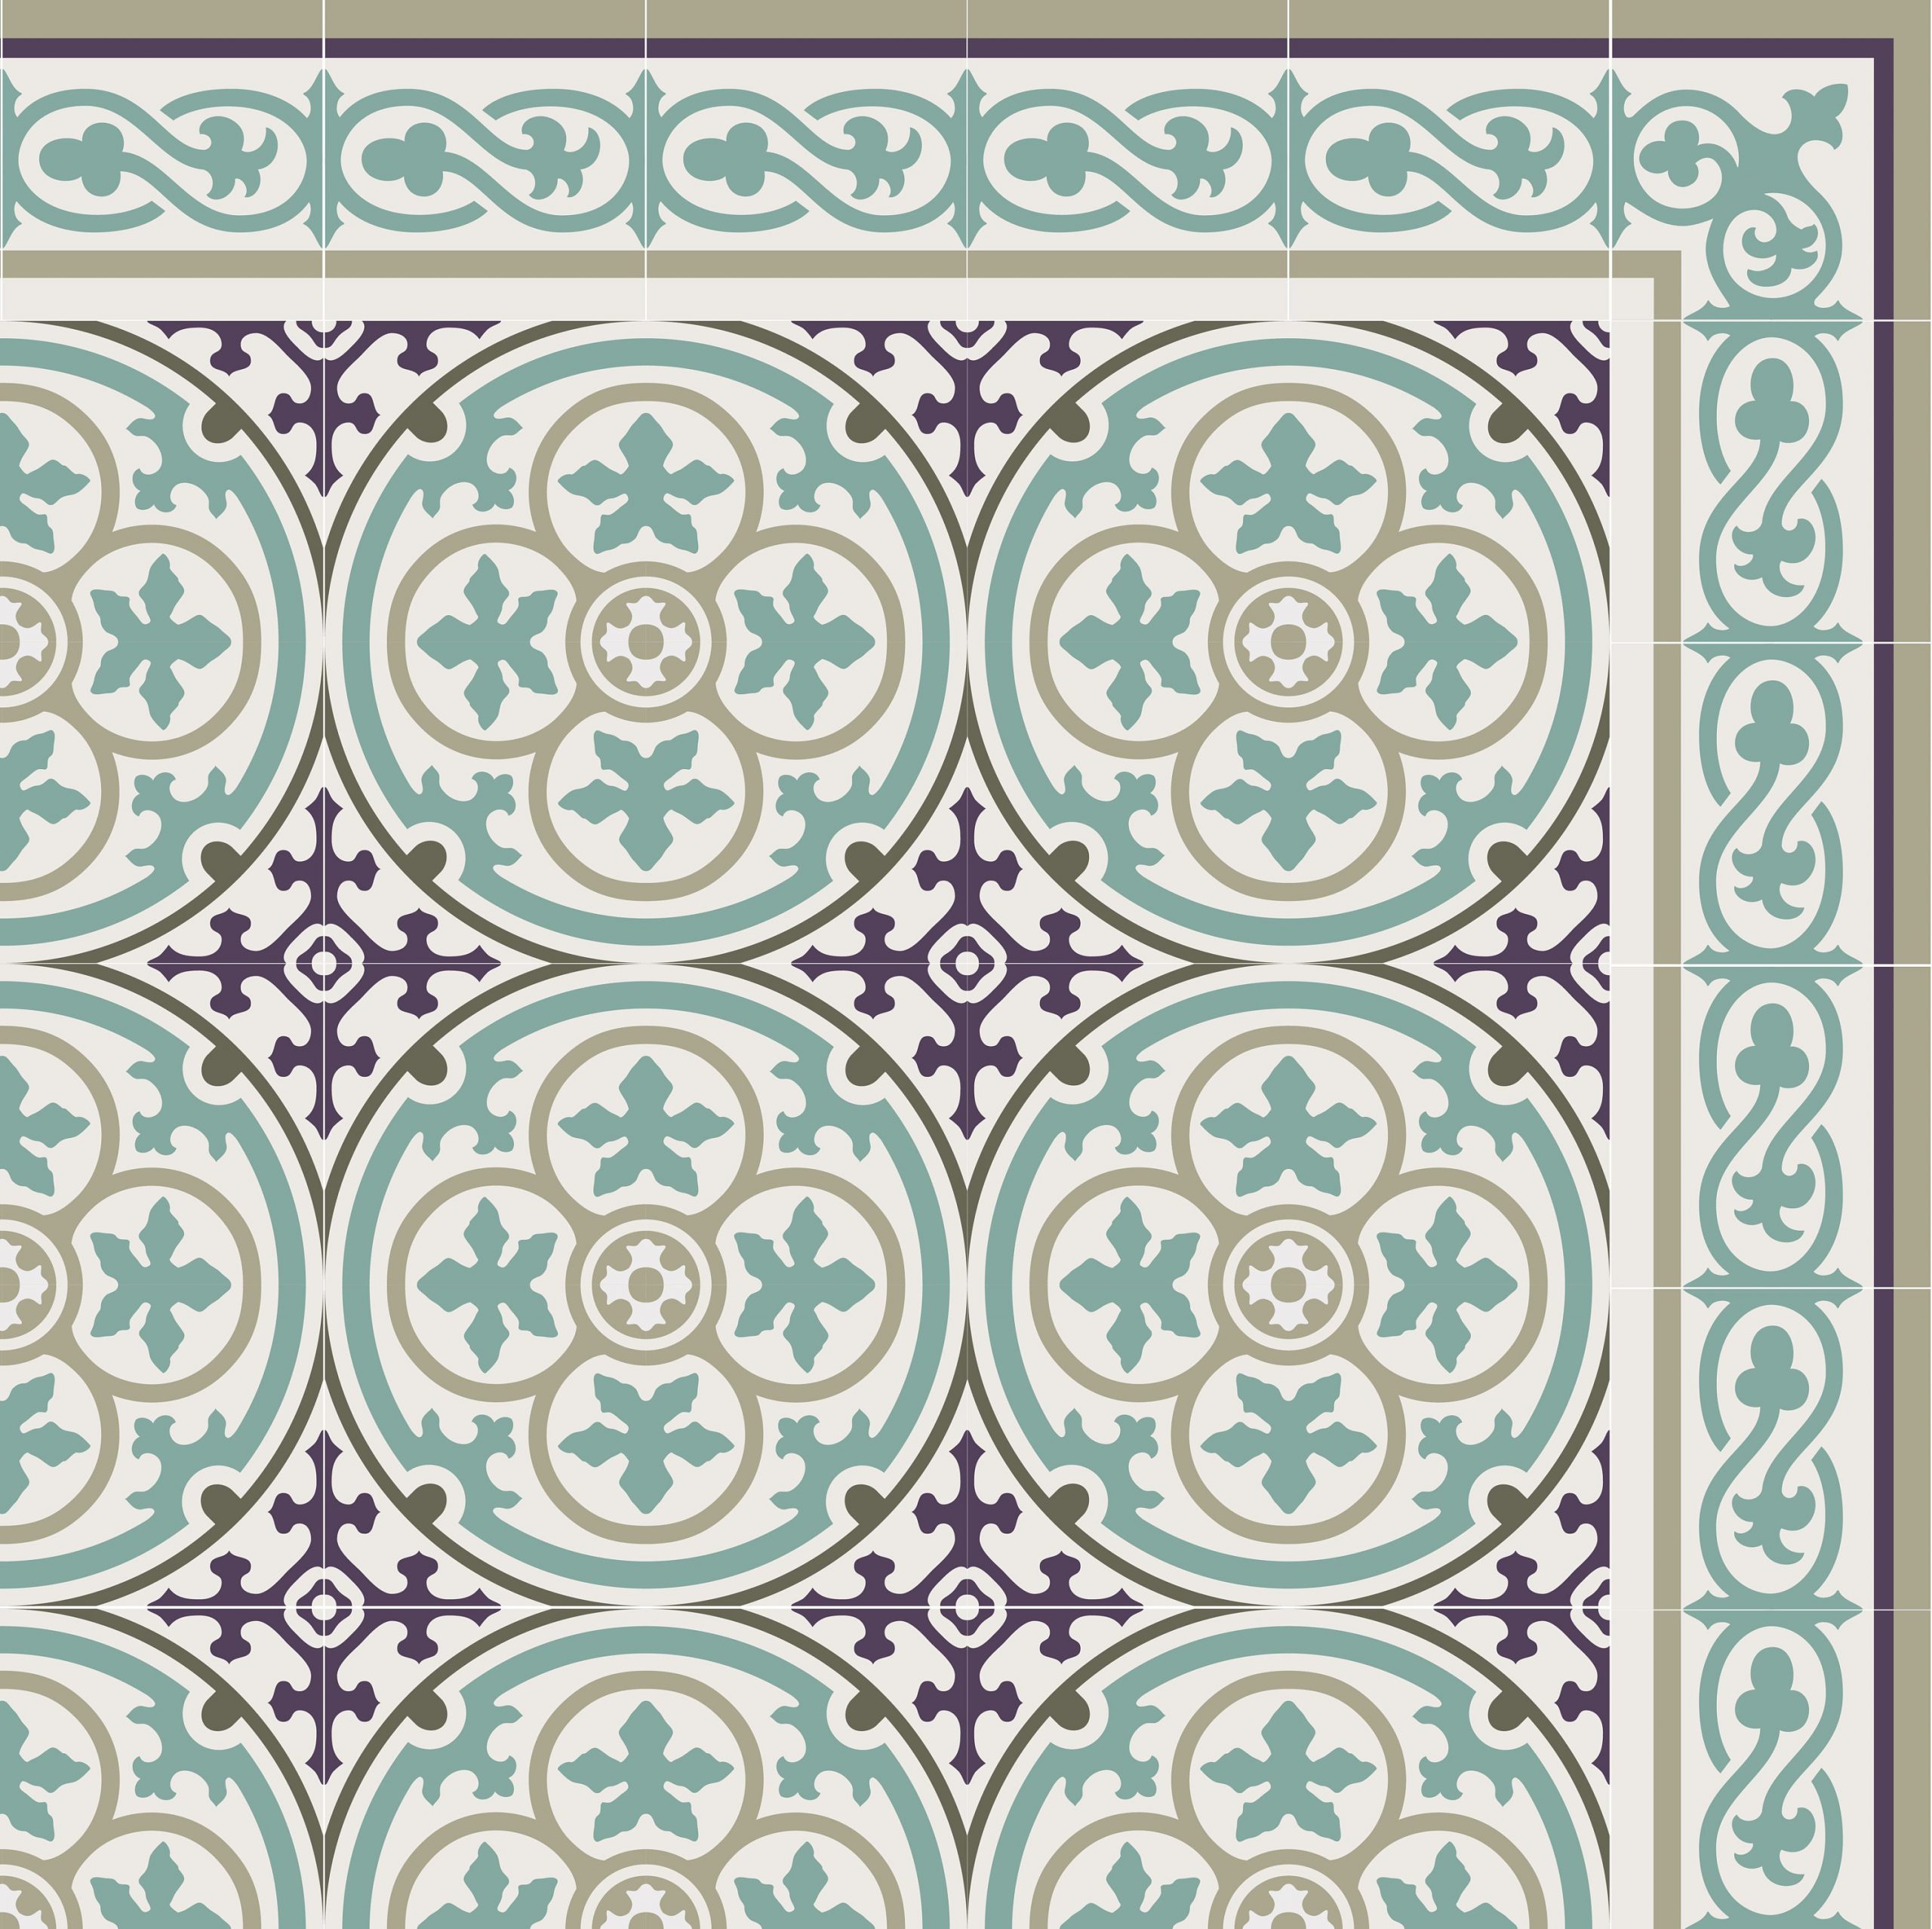 Purple Vinyl Floor Mat, Kitchen Floor Mat, With Moroccan Tiles